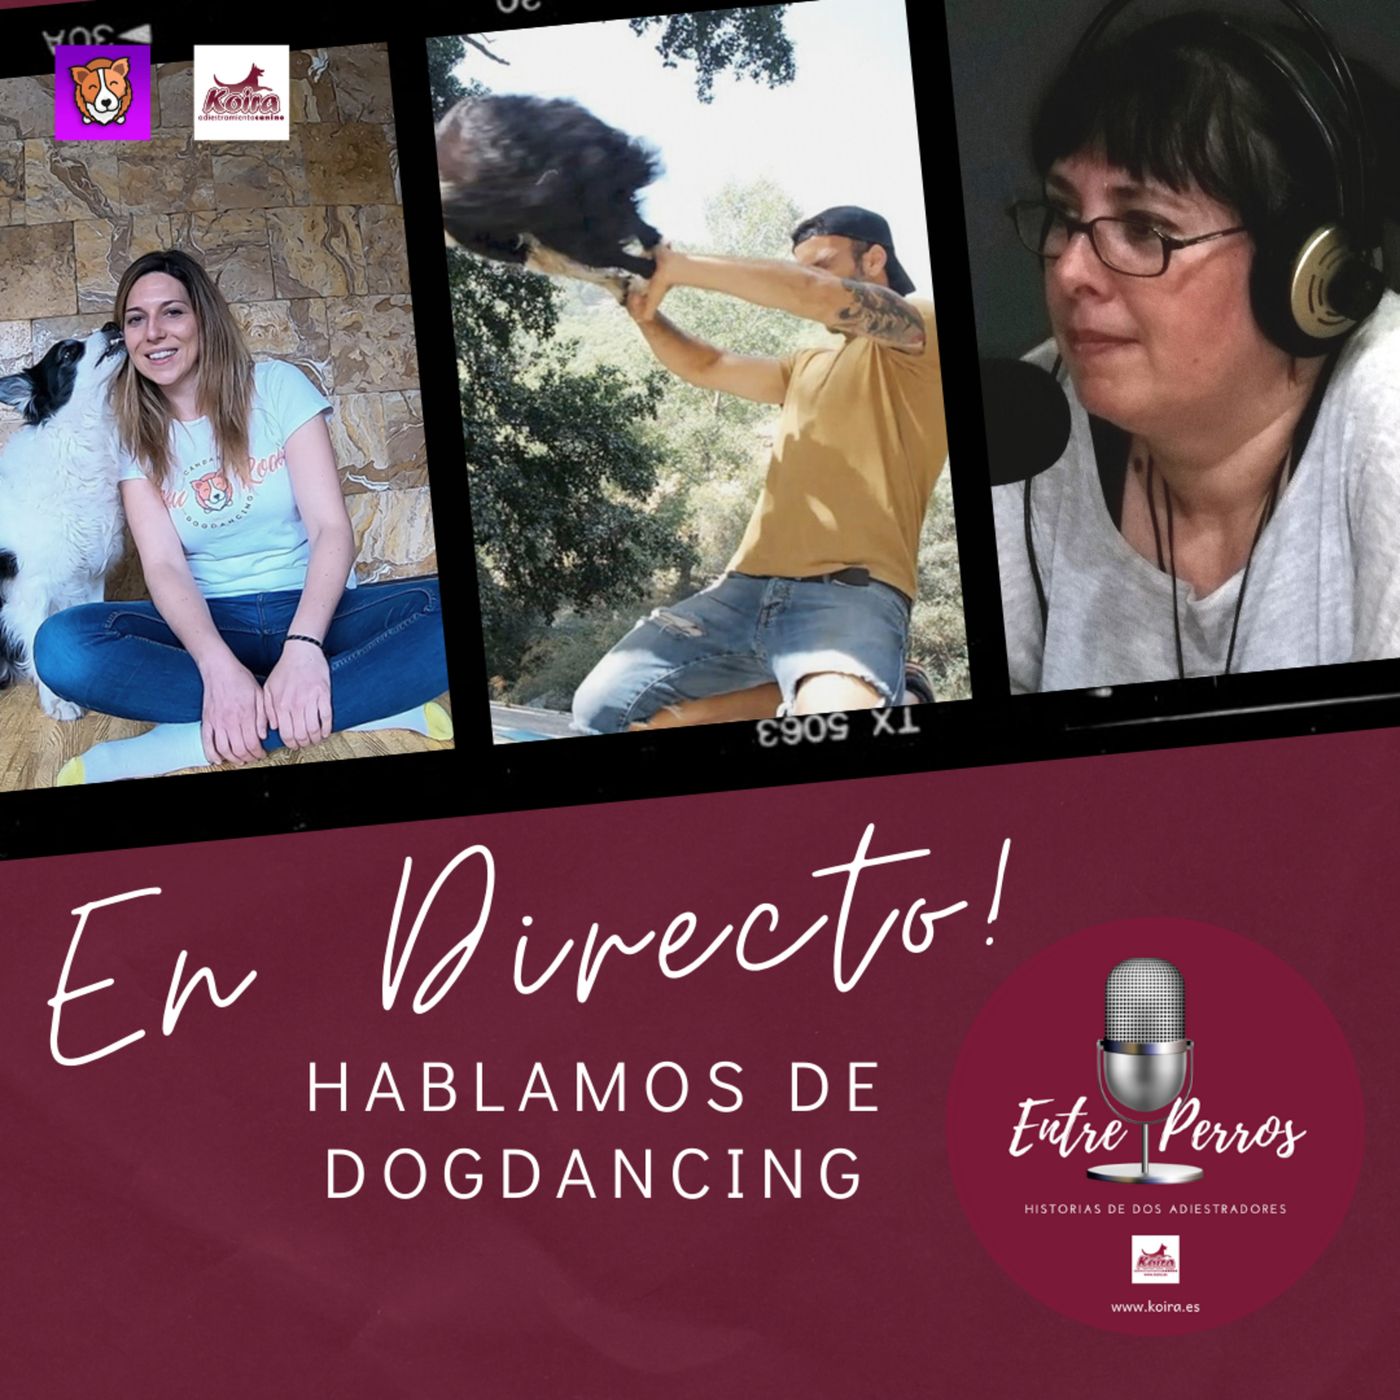 Entre perros 02 | "Hablamos de Dog Dancing" Entrevista con Alfonso y Tania de Candance